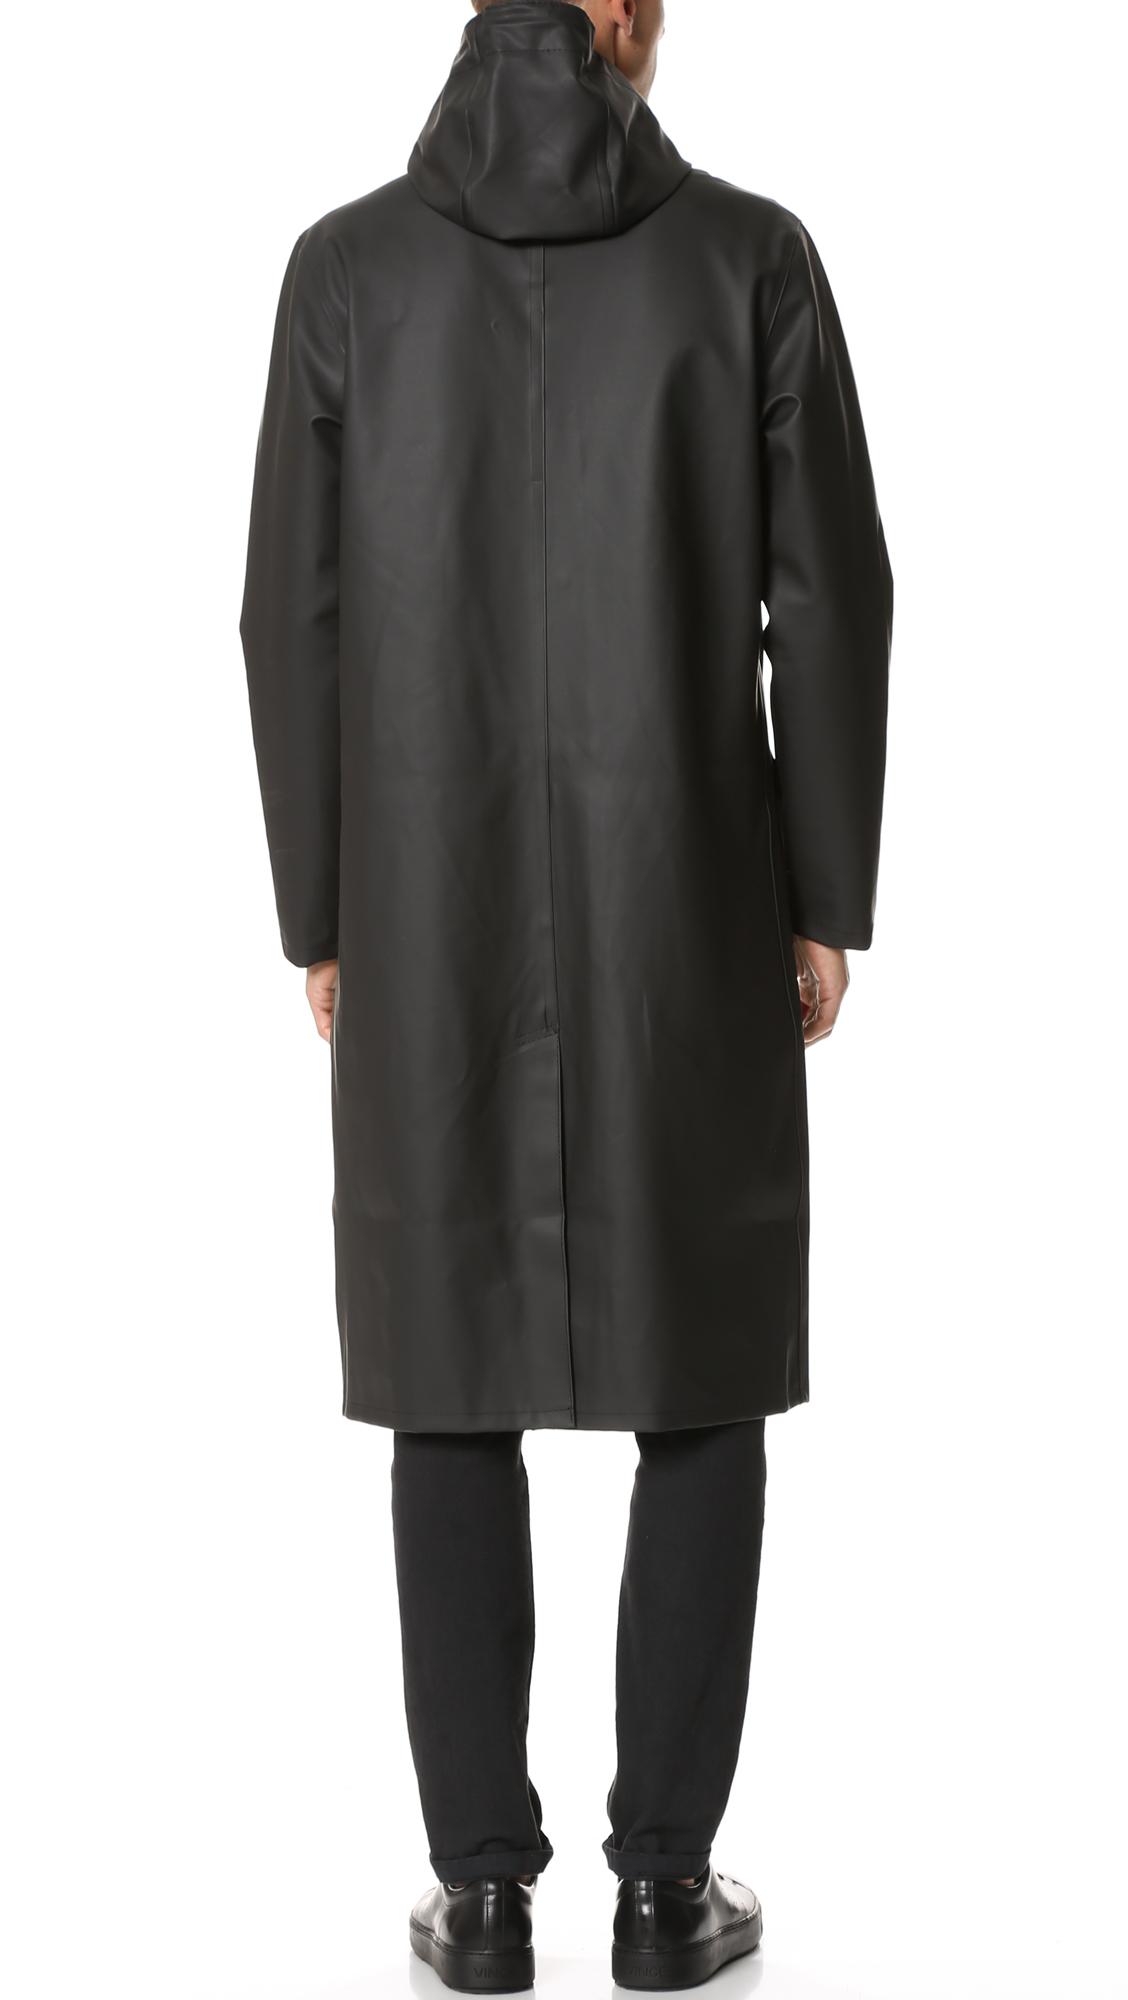 Stutterheim Rubber Stockholm Long Raincoat in Black for Men - Lyst